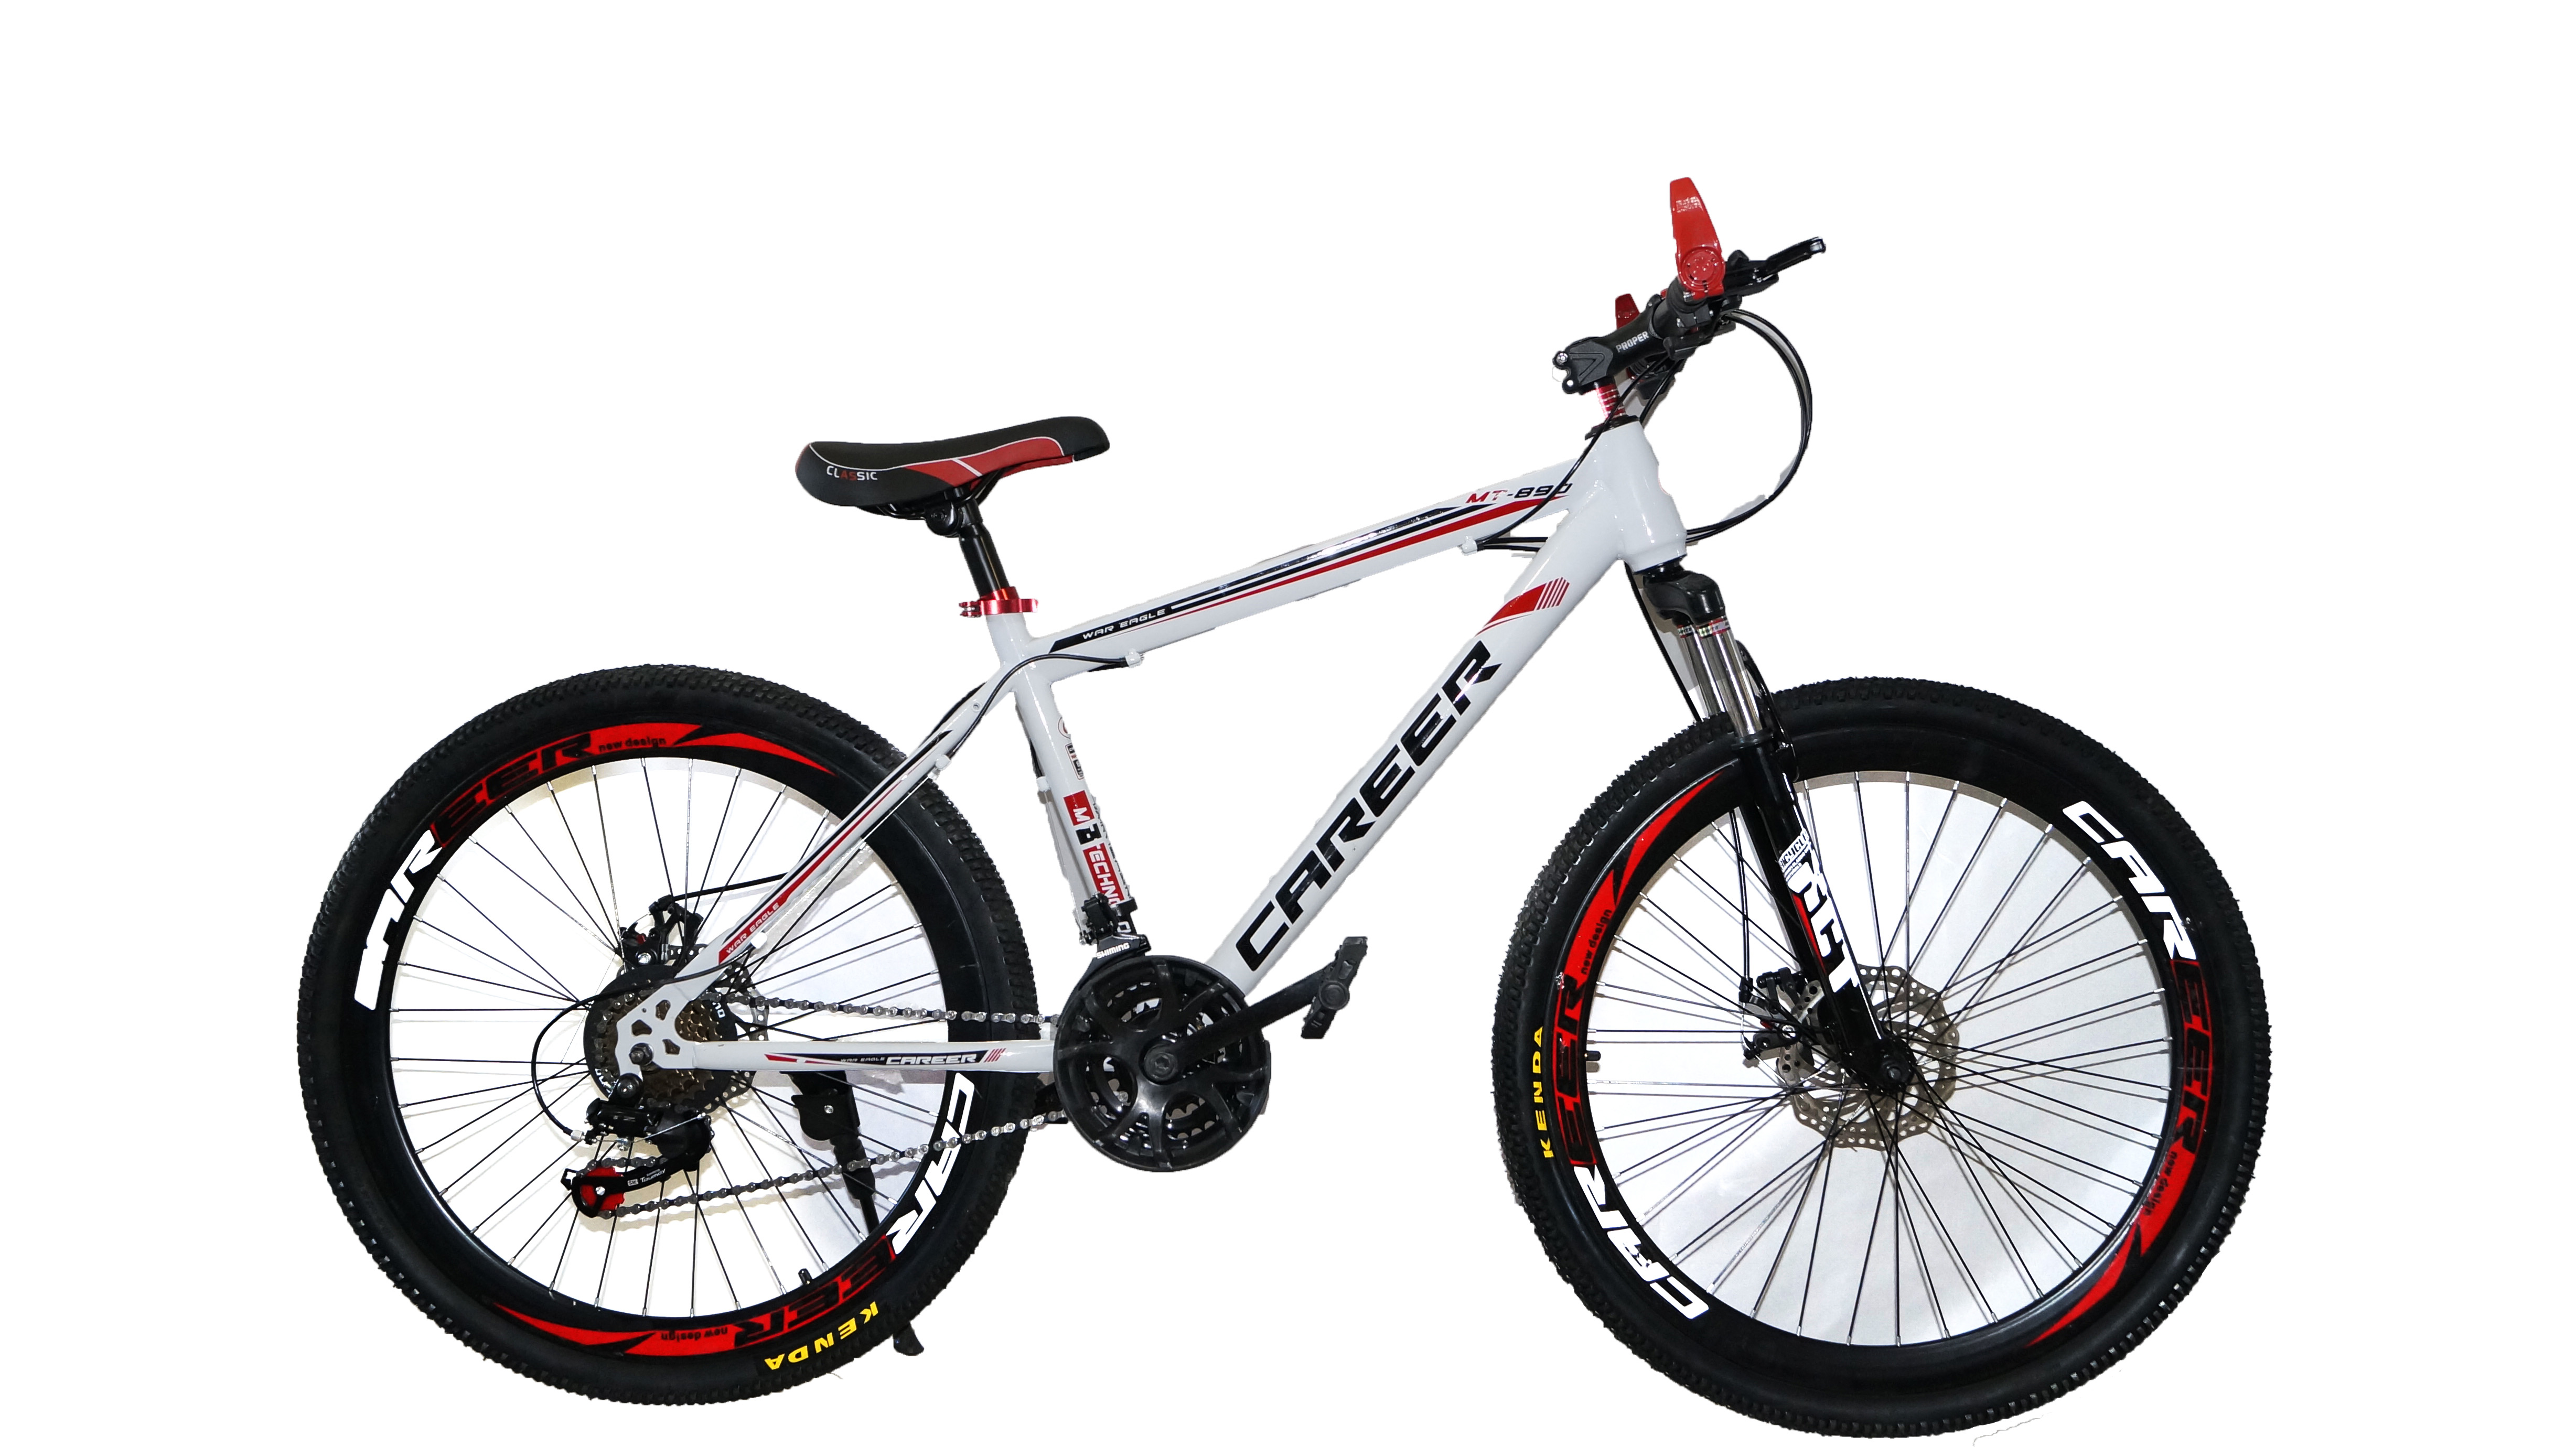 Велосипед купить интернет магазин с доставкой. Велосипед Energy e01, 26 дюймов, 21 скорость, (черно-красный). Велосипед Dream c680. Велосипед career c680 характеристики. Велосипед Drive Dr-797.